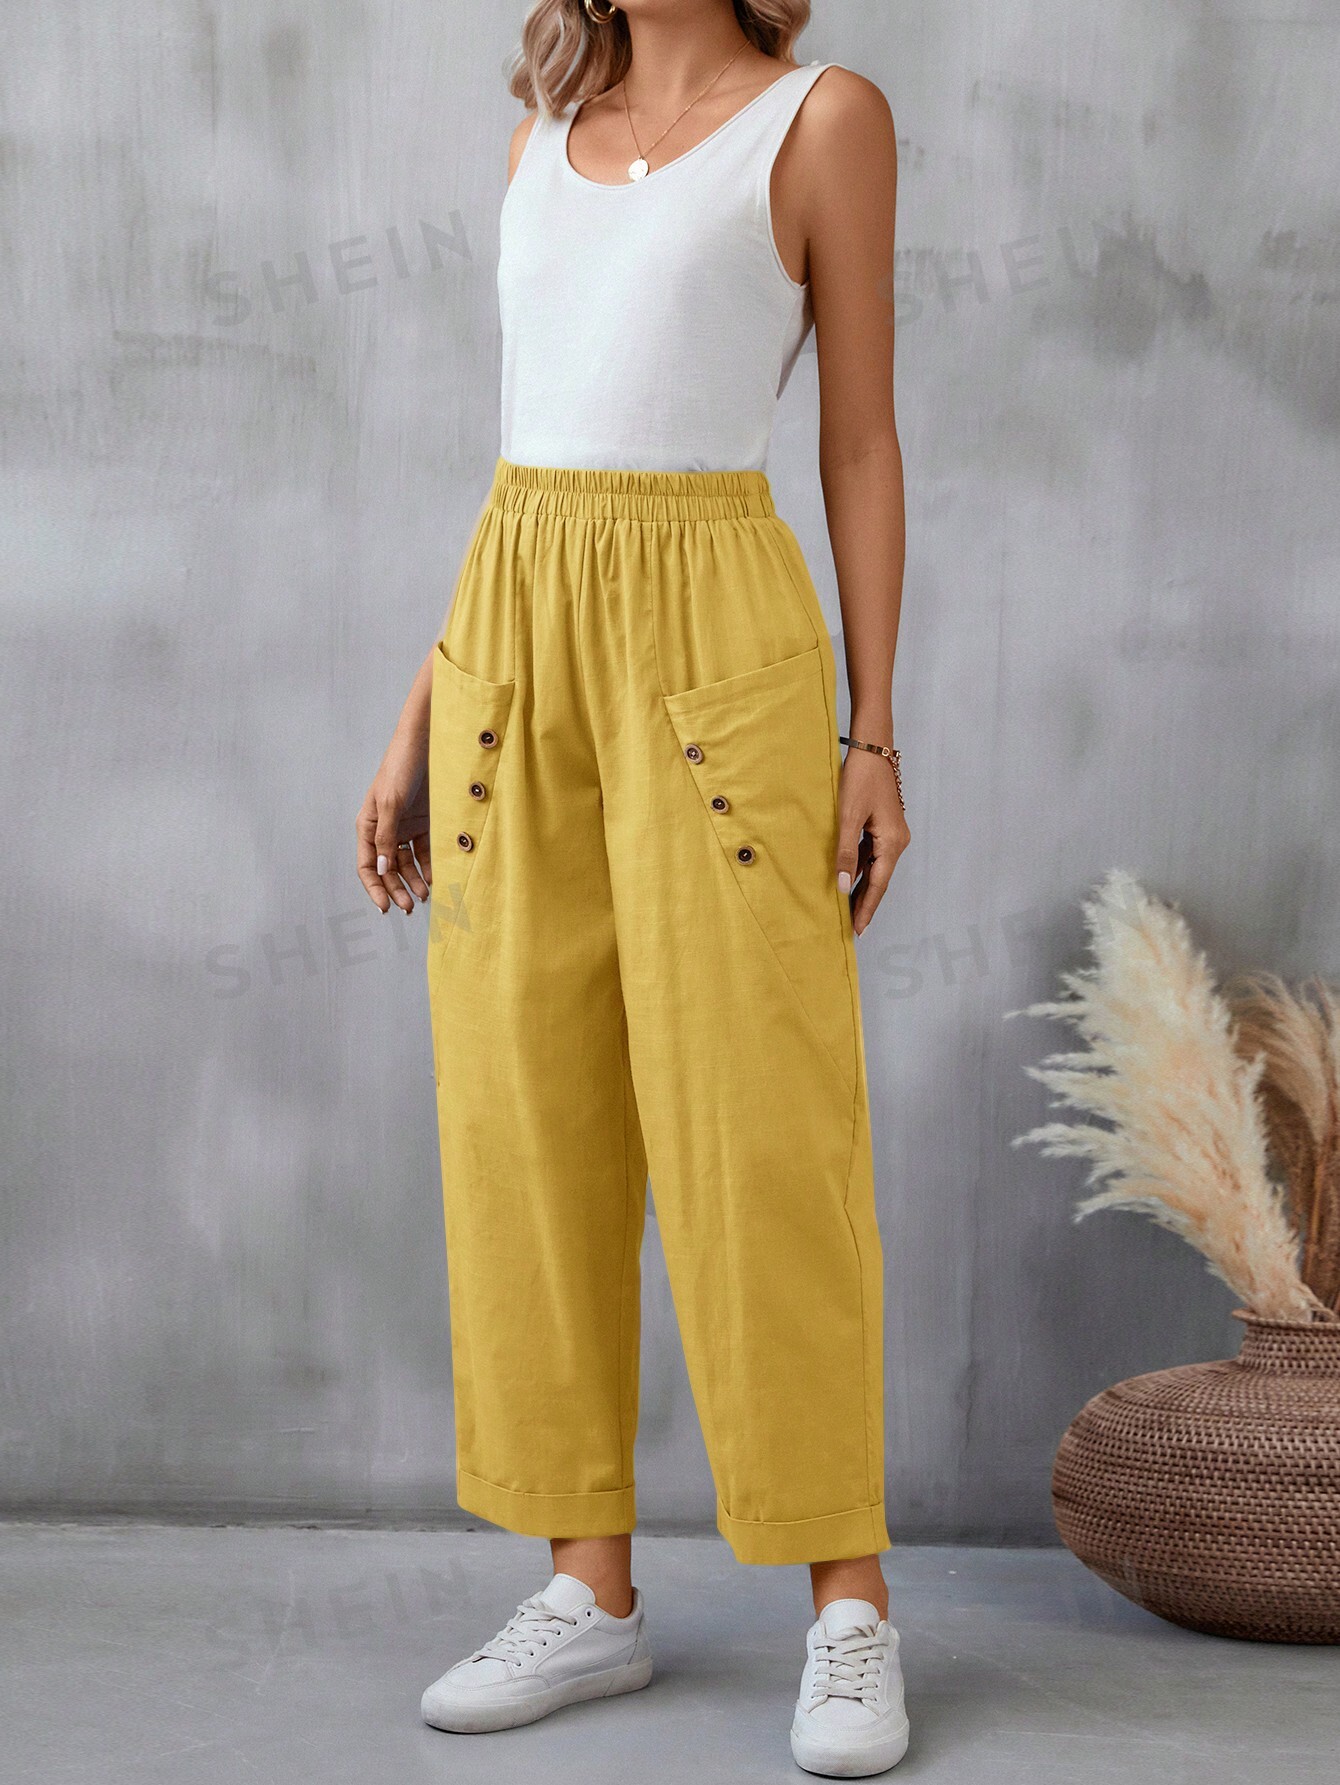 SHEIN LUNE Женские повседневные длинные брюки с двойными карманами и эластичной резинкой на талии, желтый фото